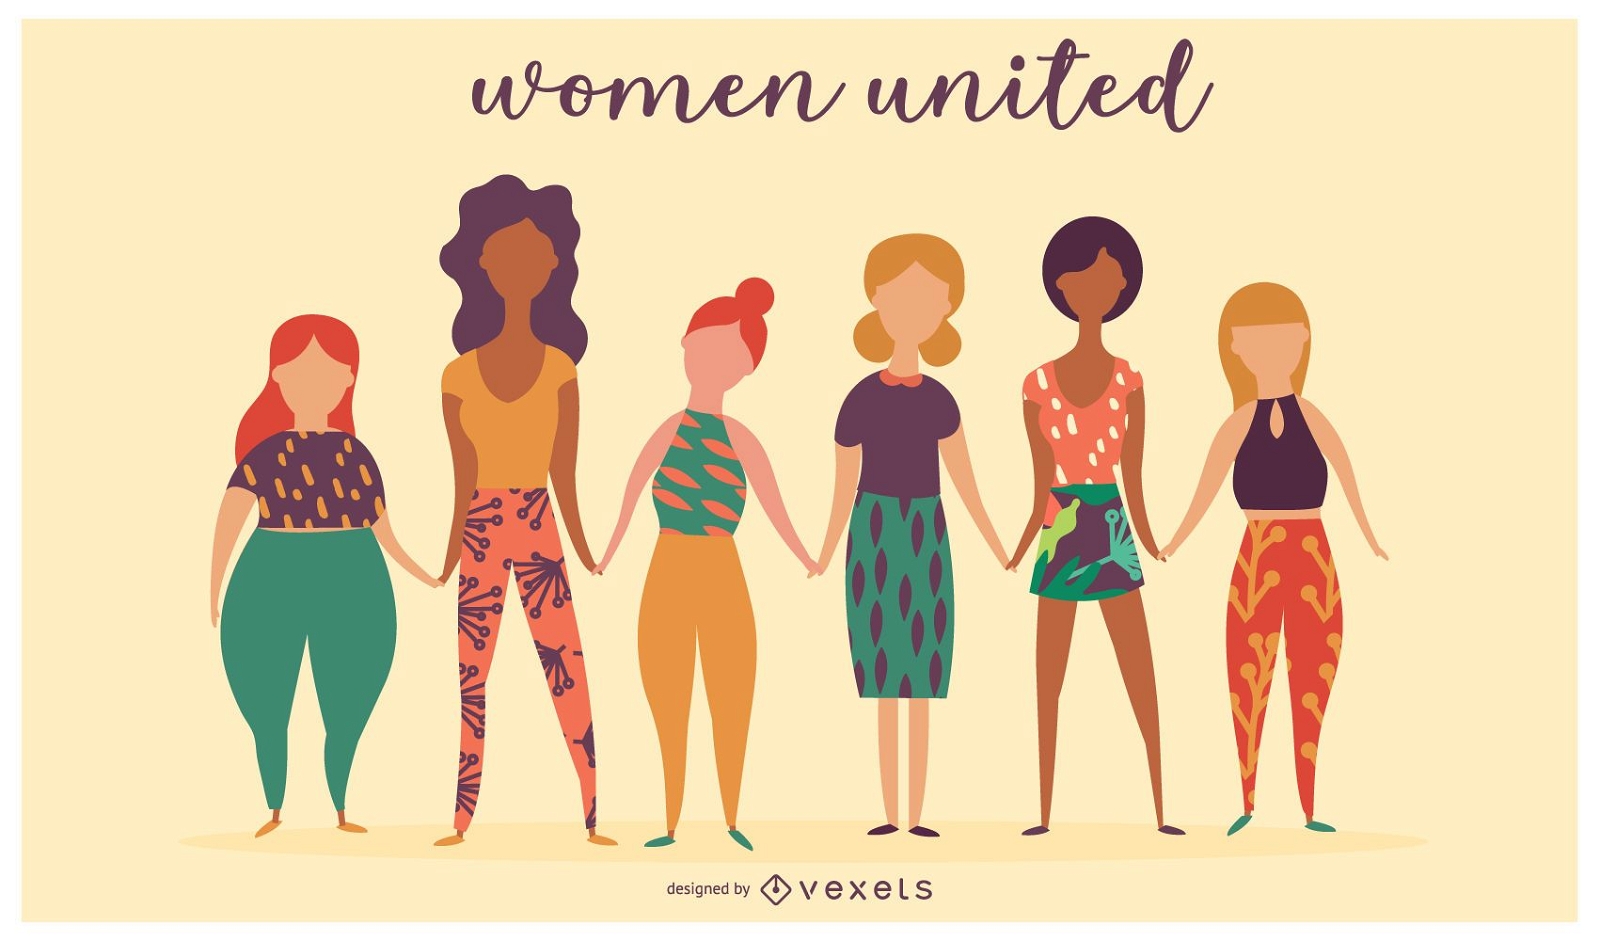 Diseño de ilustración de mujeres unidas